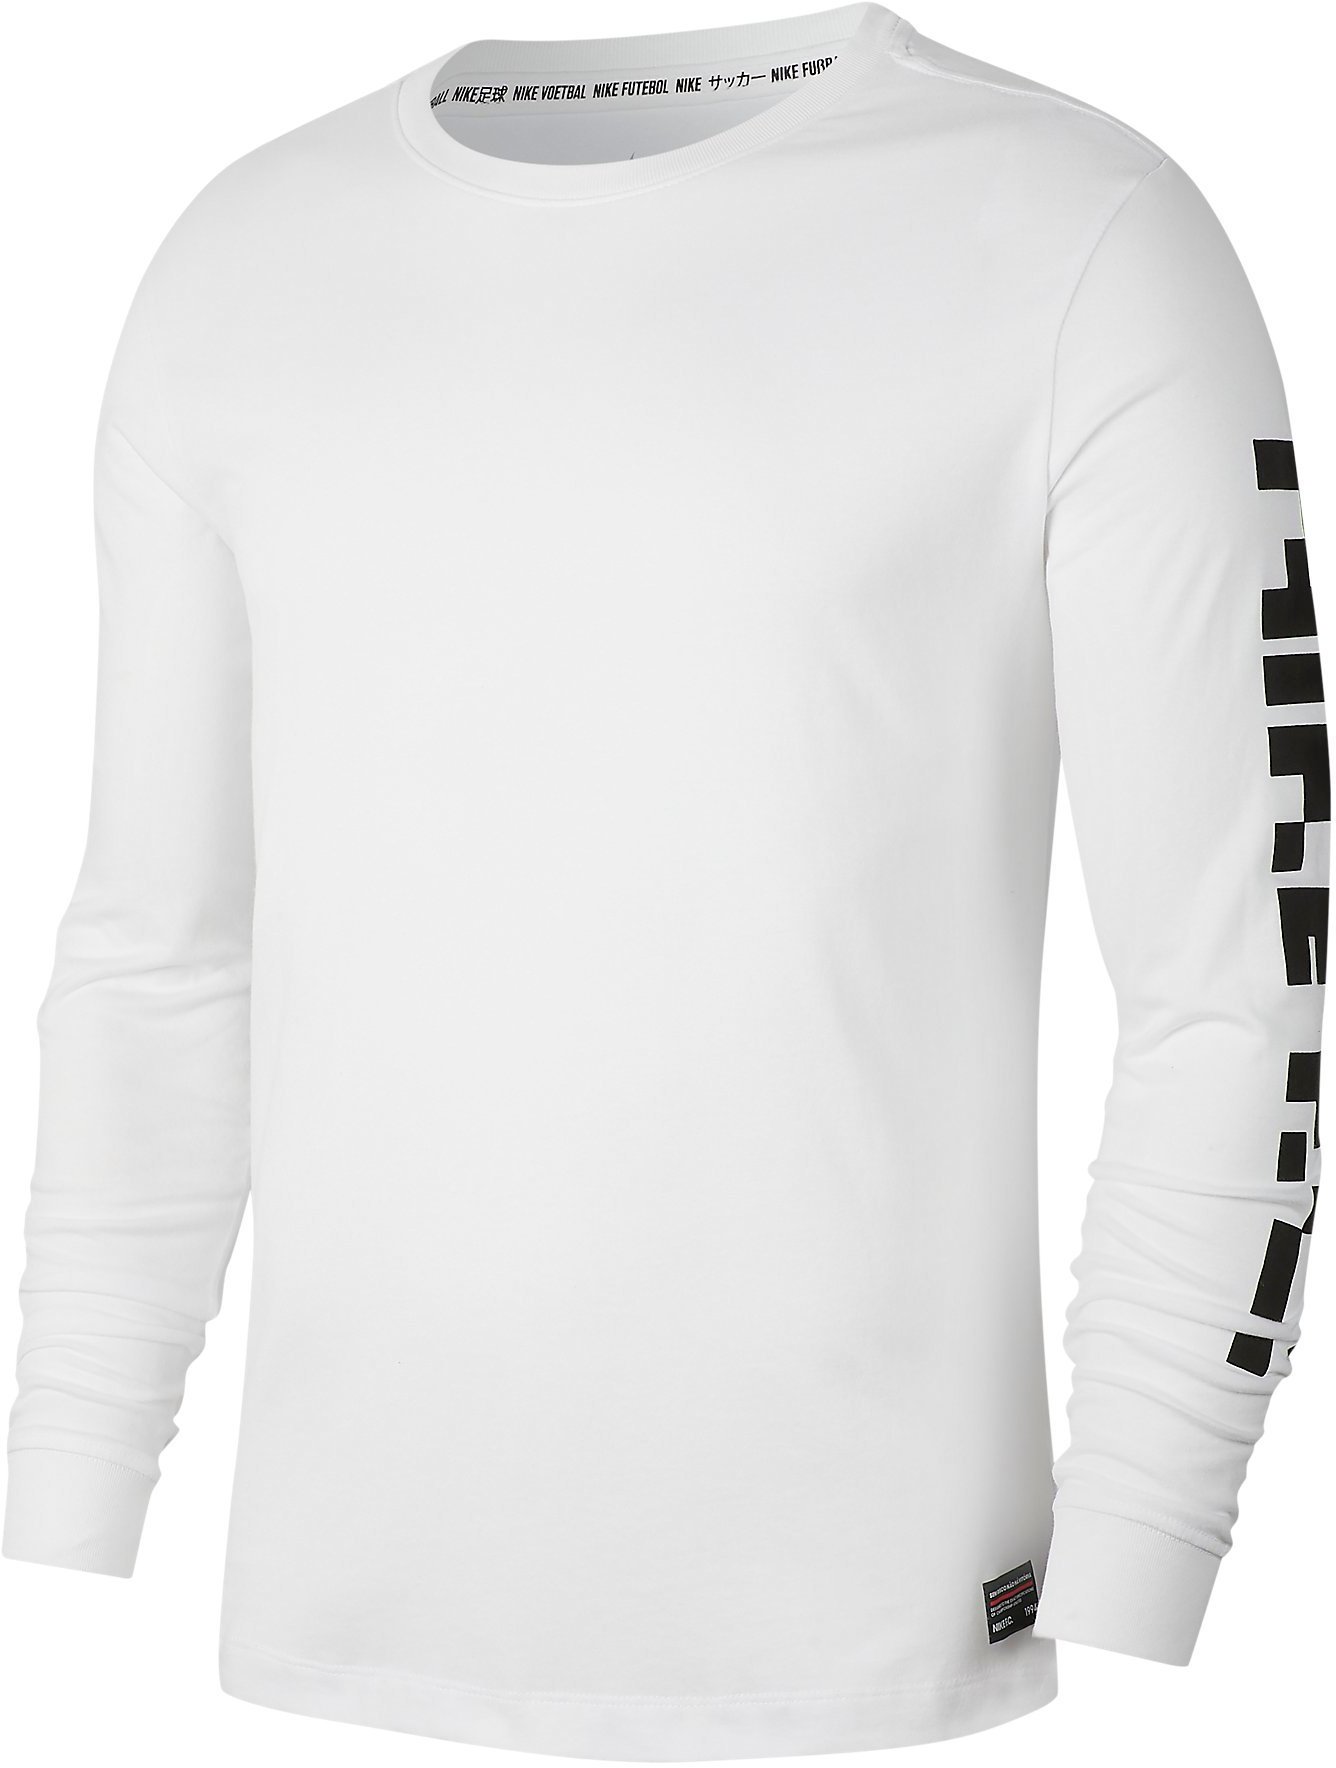 Pánské tričko s dlouhým rukávem Nike F.C. Dri-FIT 8 Bit